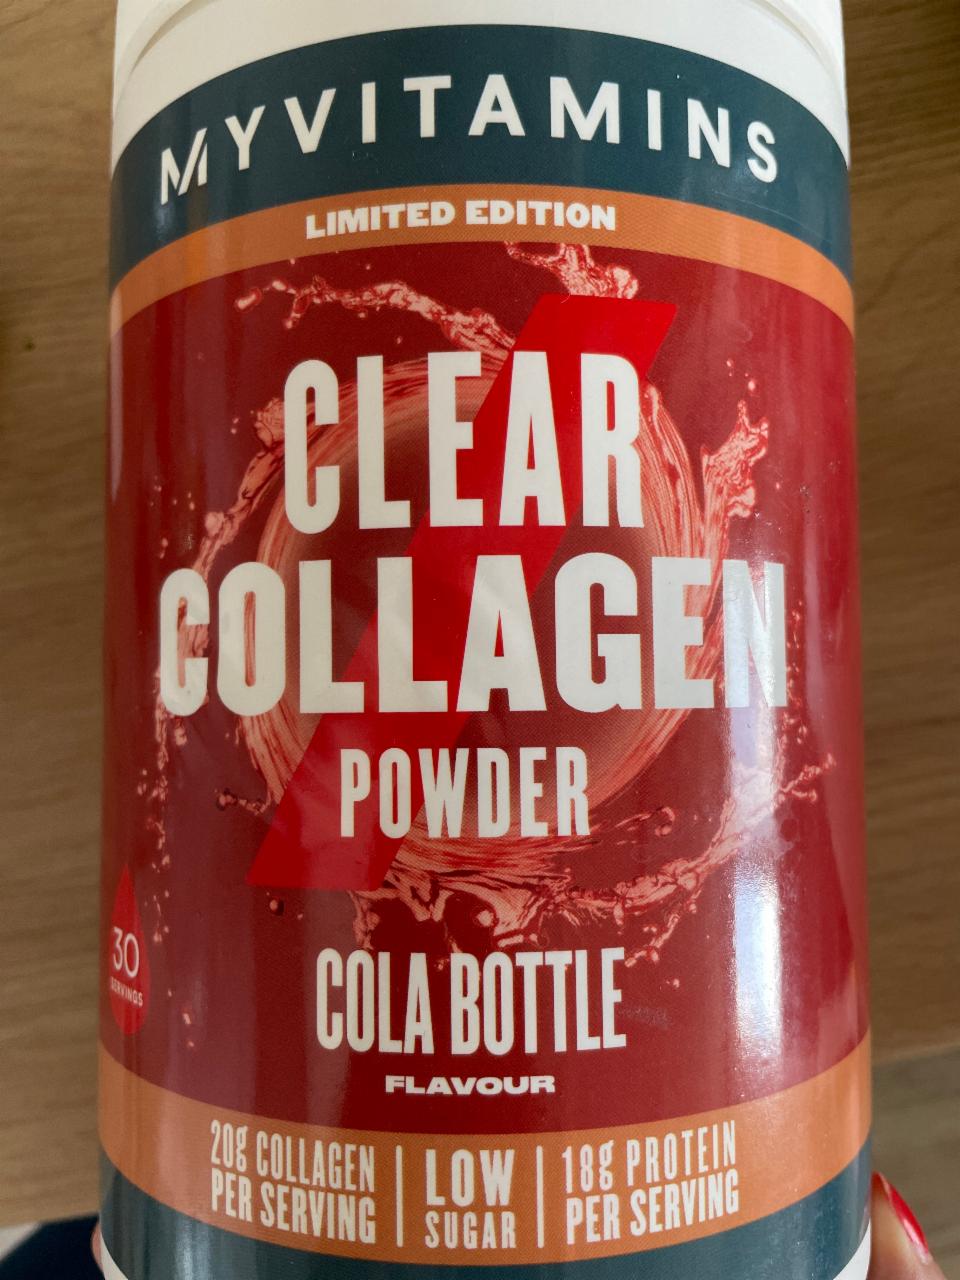 Fotografie - Clear Collagen Powder Cola Bottle flavour MyVitamins